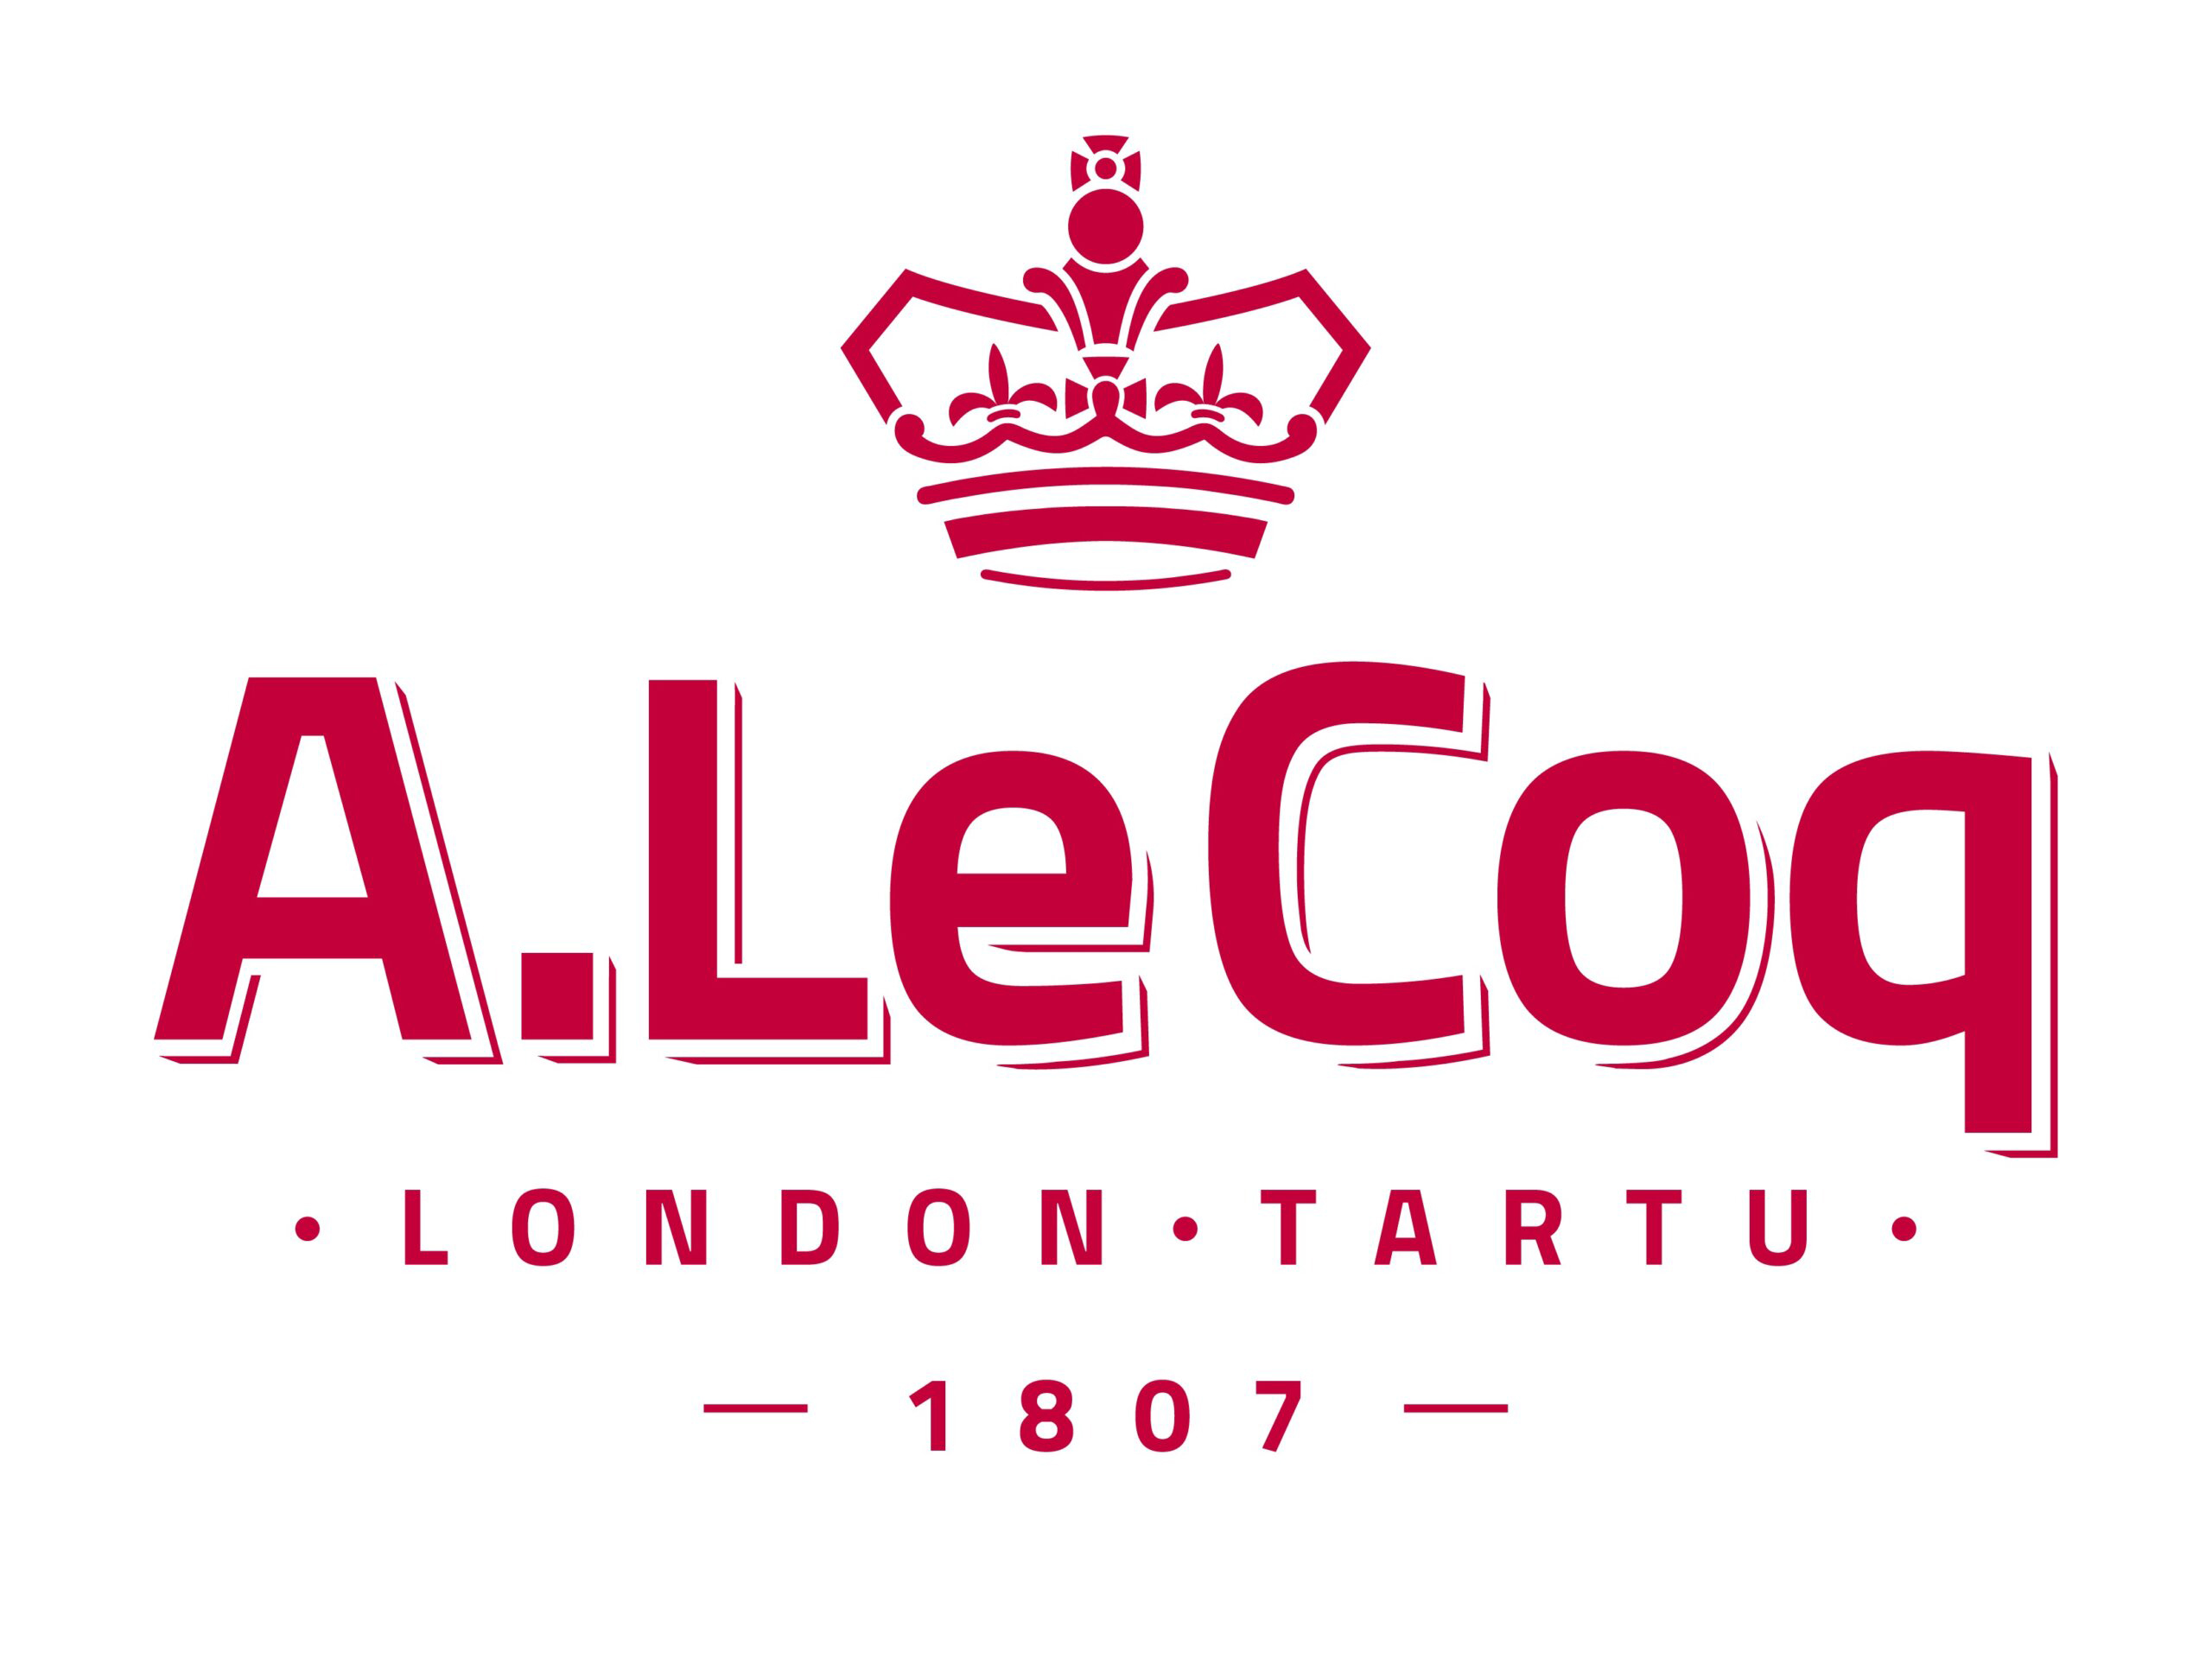 A.-Le-Coq_logo_uus